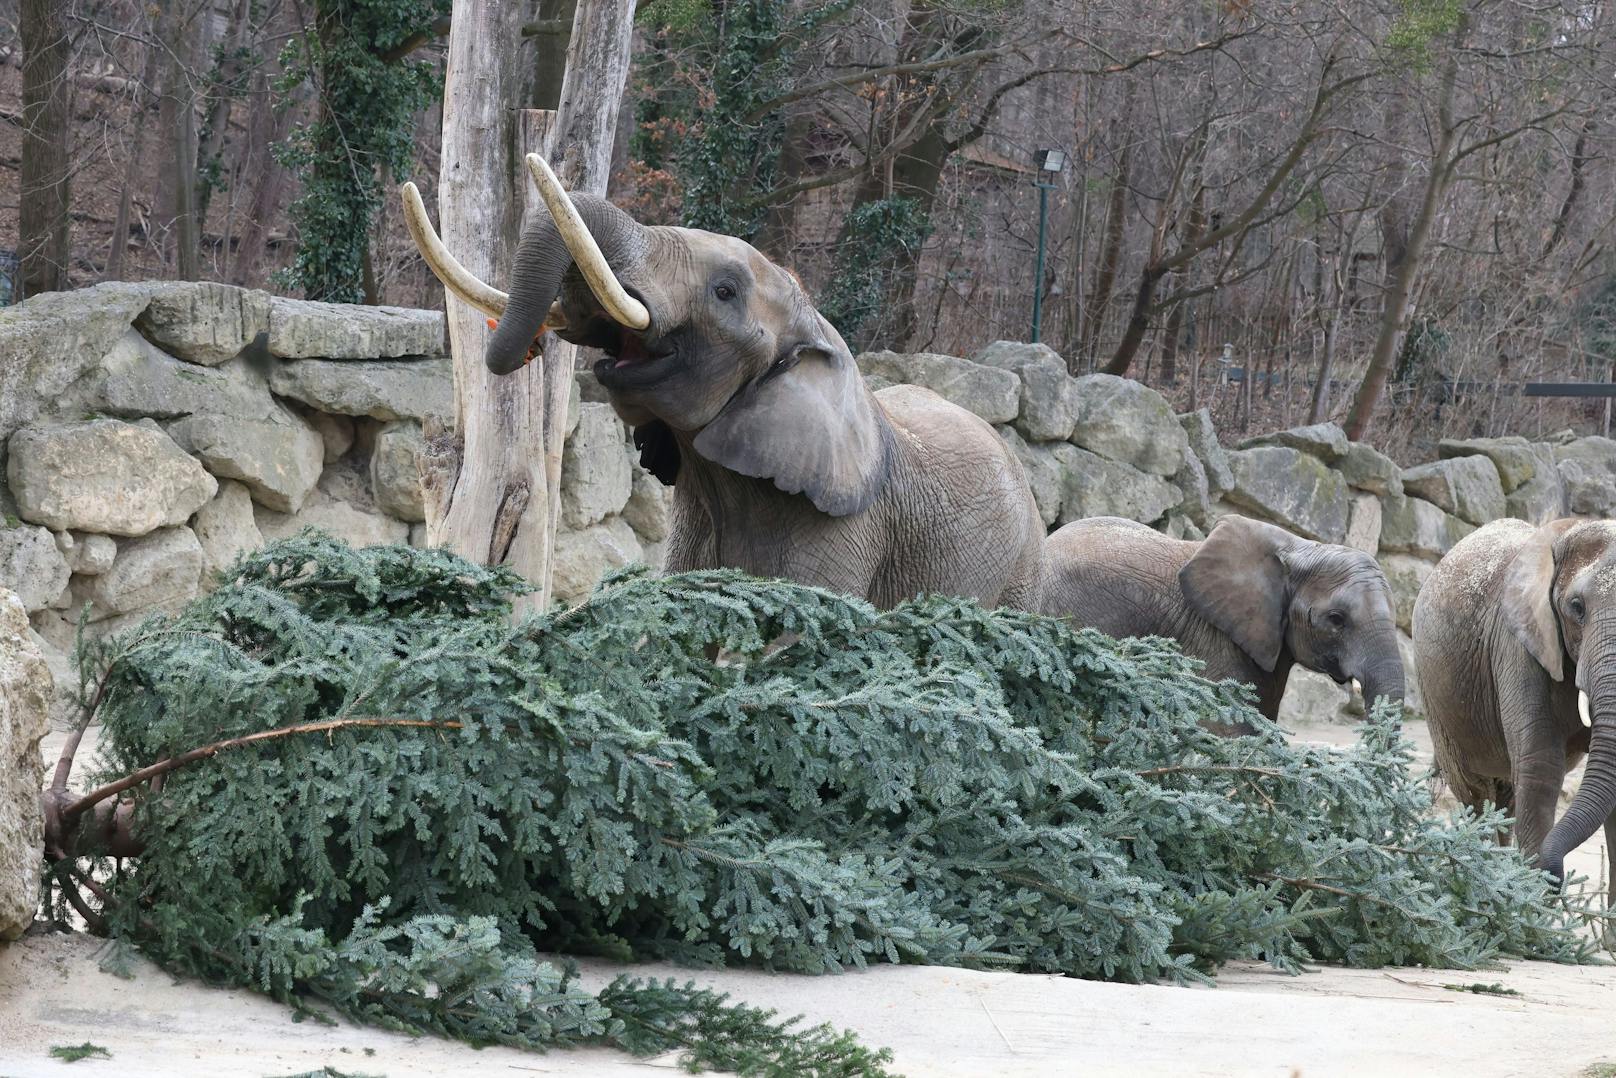 Wie jedes Jahr gab es für die Elefanten im Zoo Schönbrunn ein schmackhaftes Nach-Weihnachtsgeschenk. Dienstagfrüh durften sie den Christbaum verputzen, der vor dem Schloss Schönbrunn für weihnachtliche Stimmung gesorgt hatte.